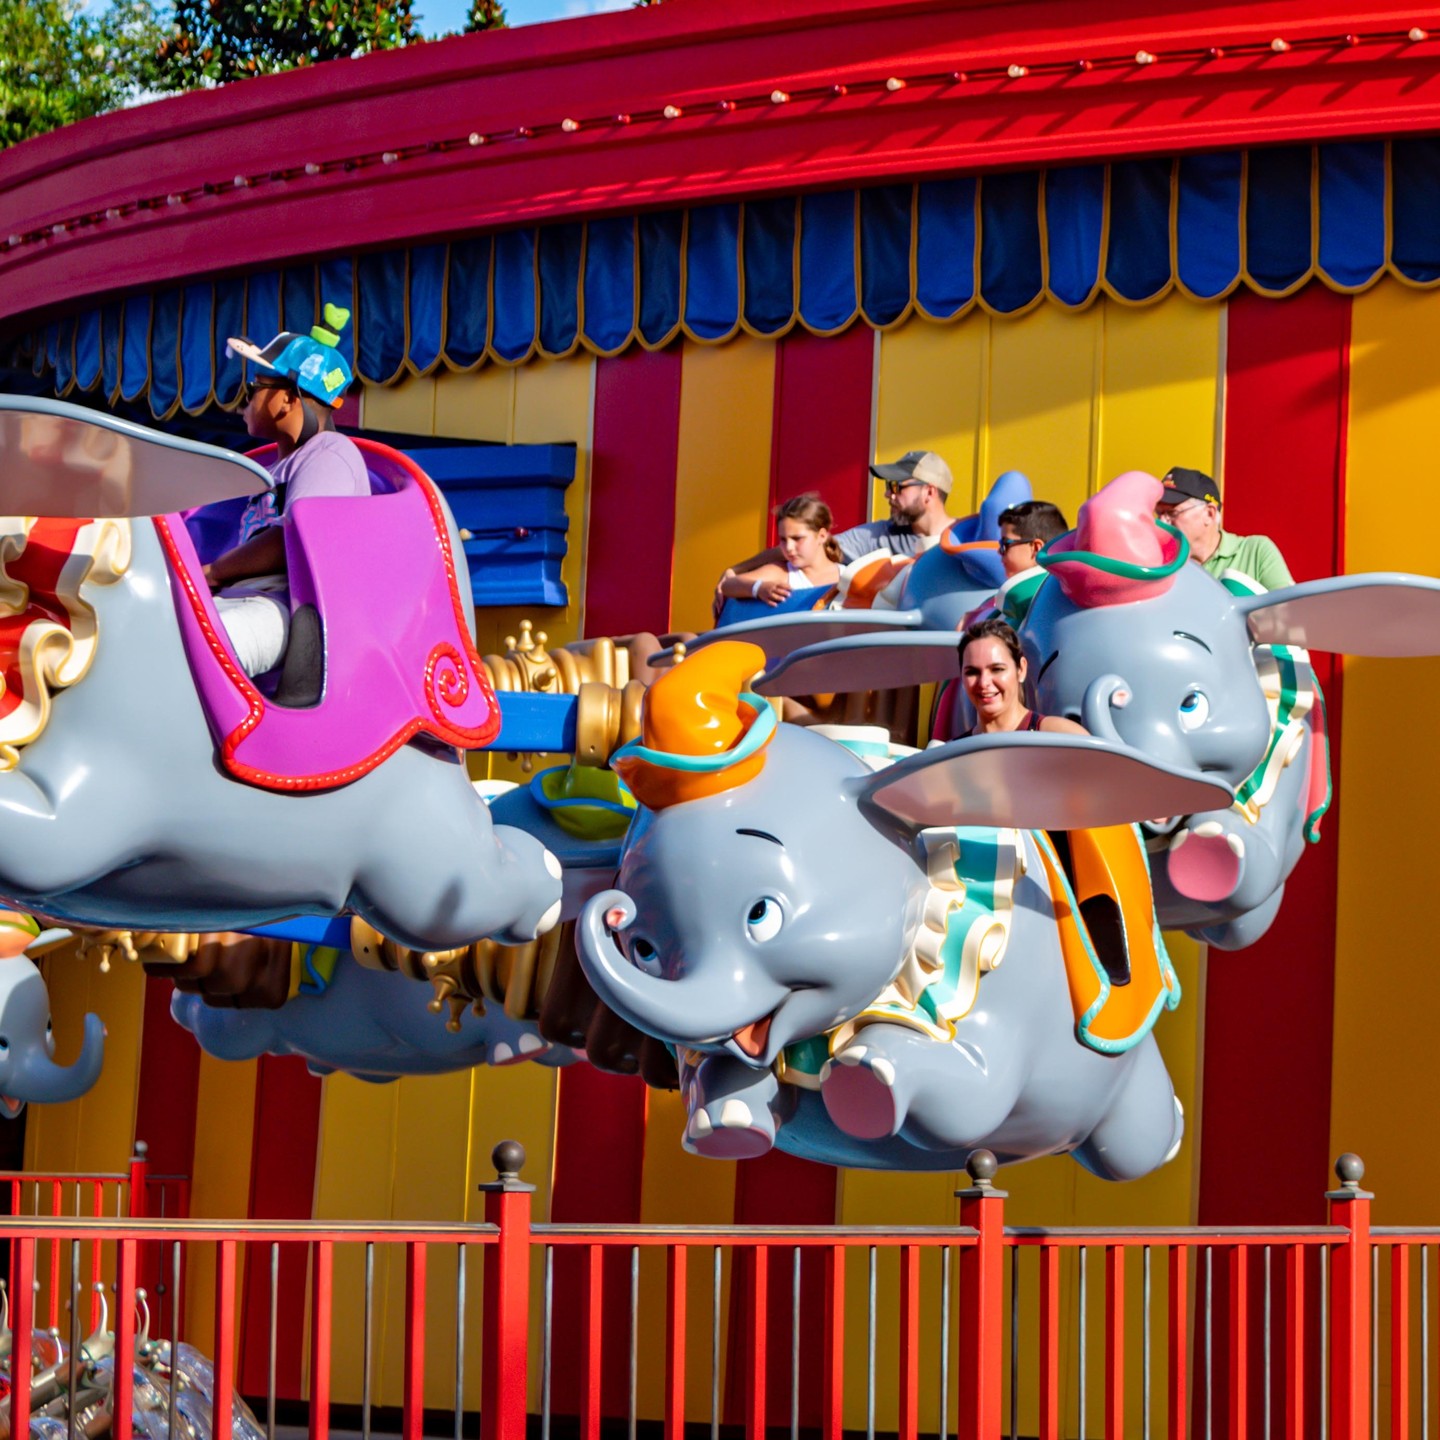 Atração Dumbo The Flying Elephant no Magic Kingdom